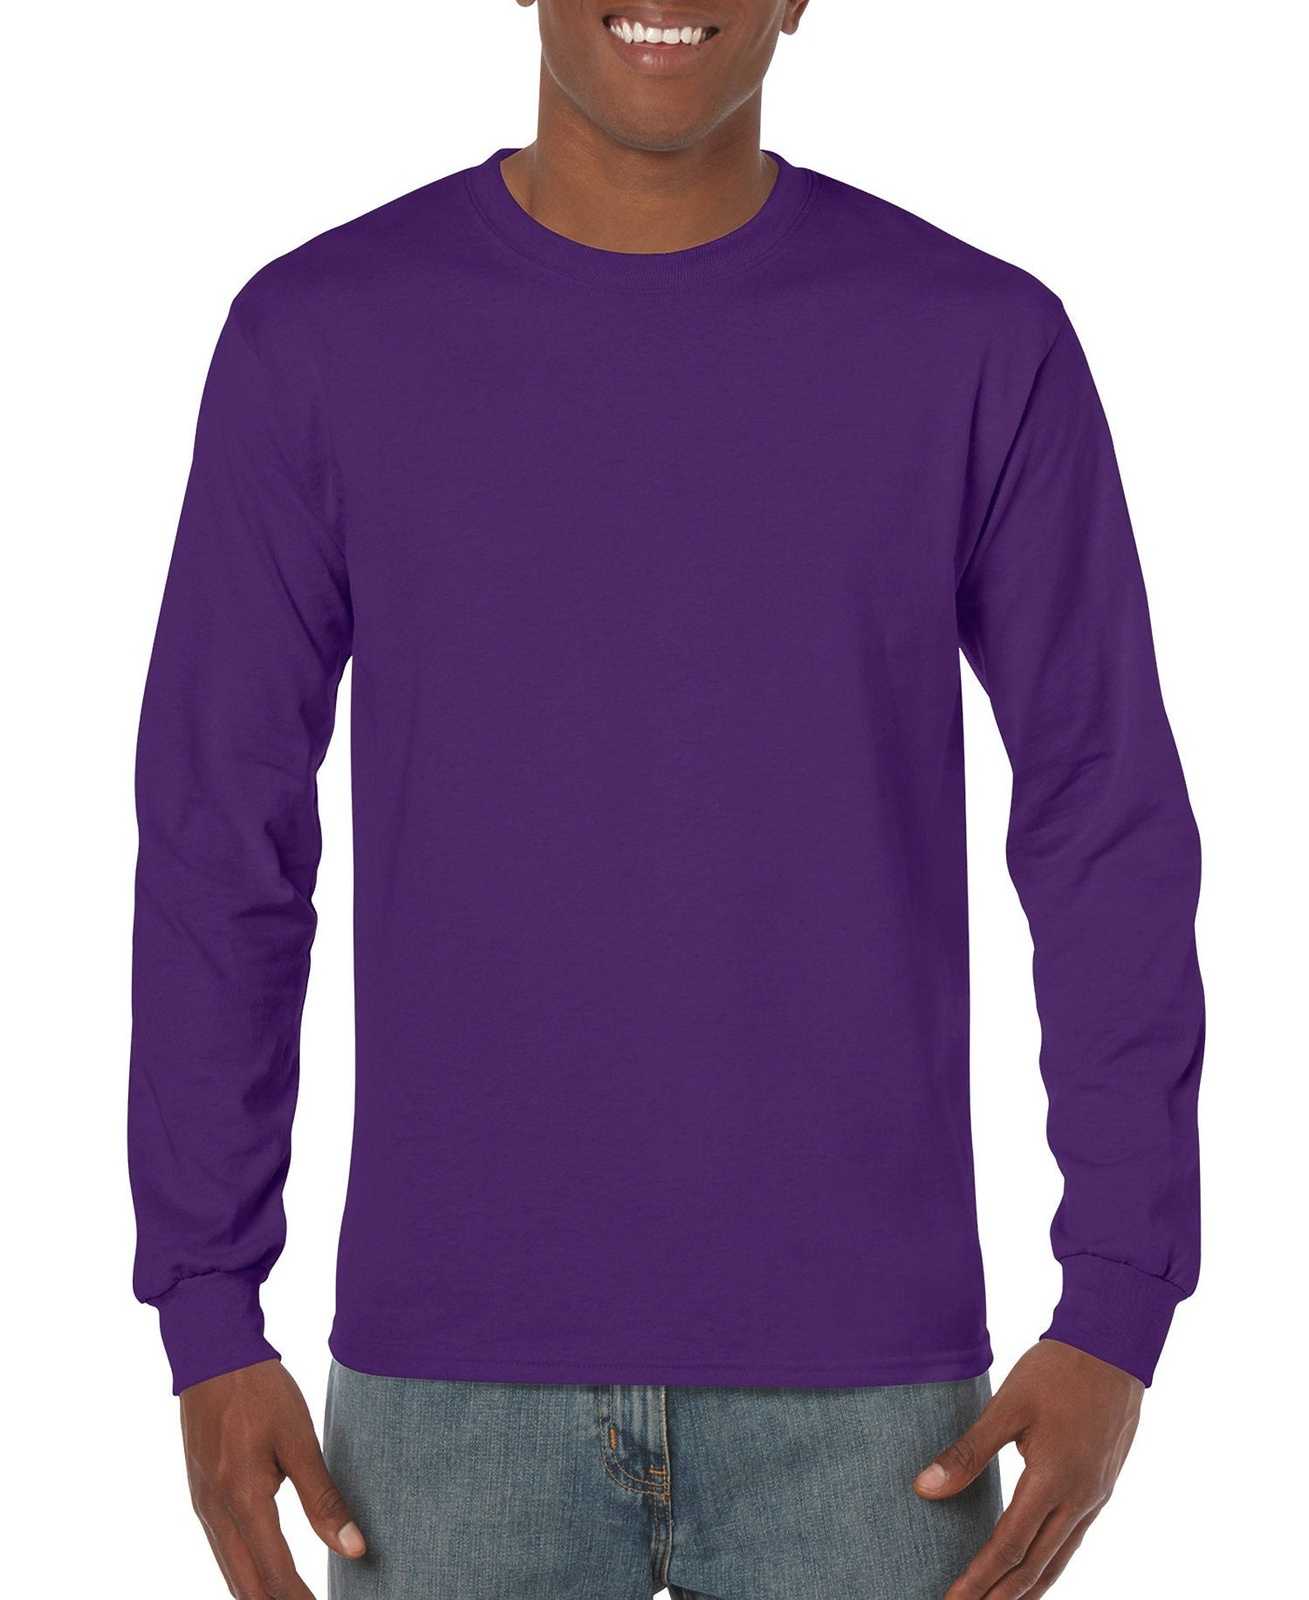 Gildan 5400 Heavy Cotton 100% Cotton Long Sleeve T-Shirt - Purple - HIT a Double